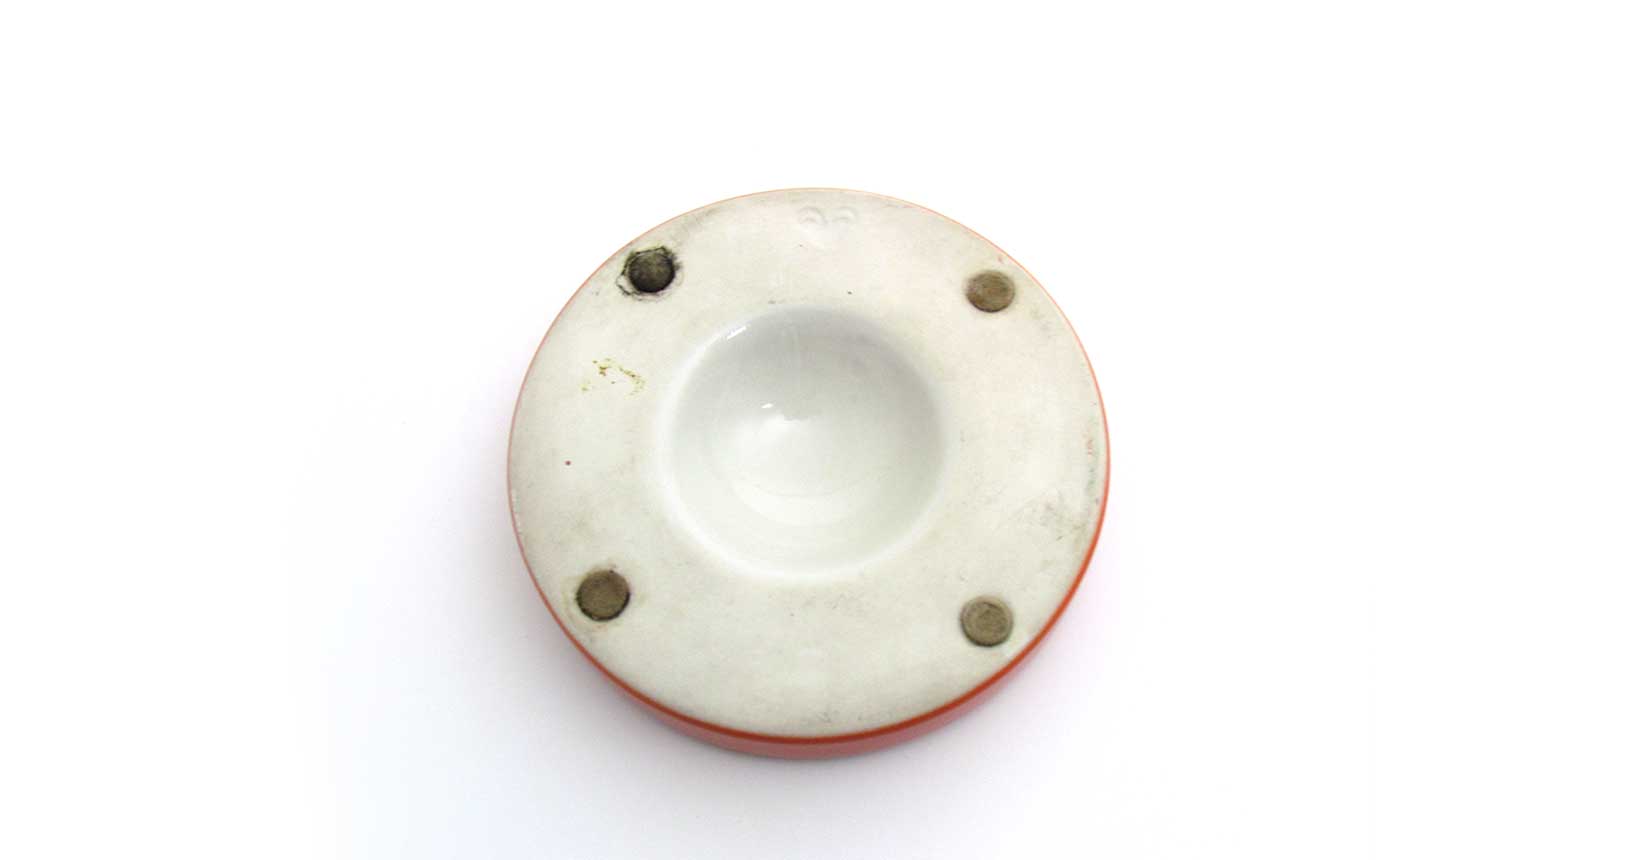 brambilla red rosso posacenere ashtray ceramica design vintage iconic design furniture mangiarotti